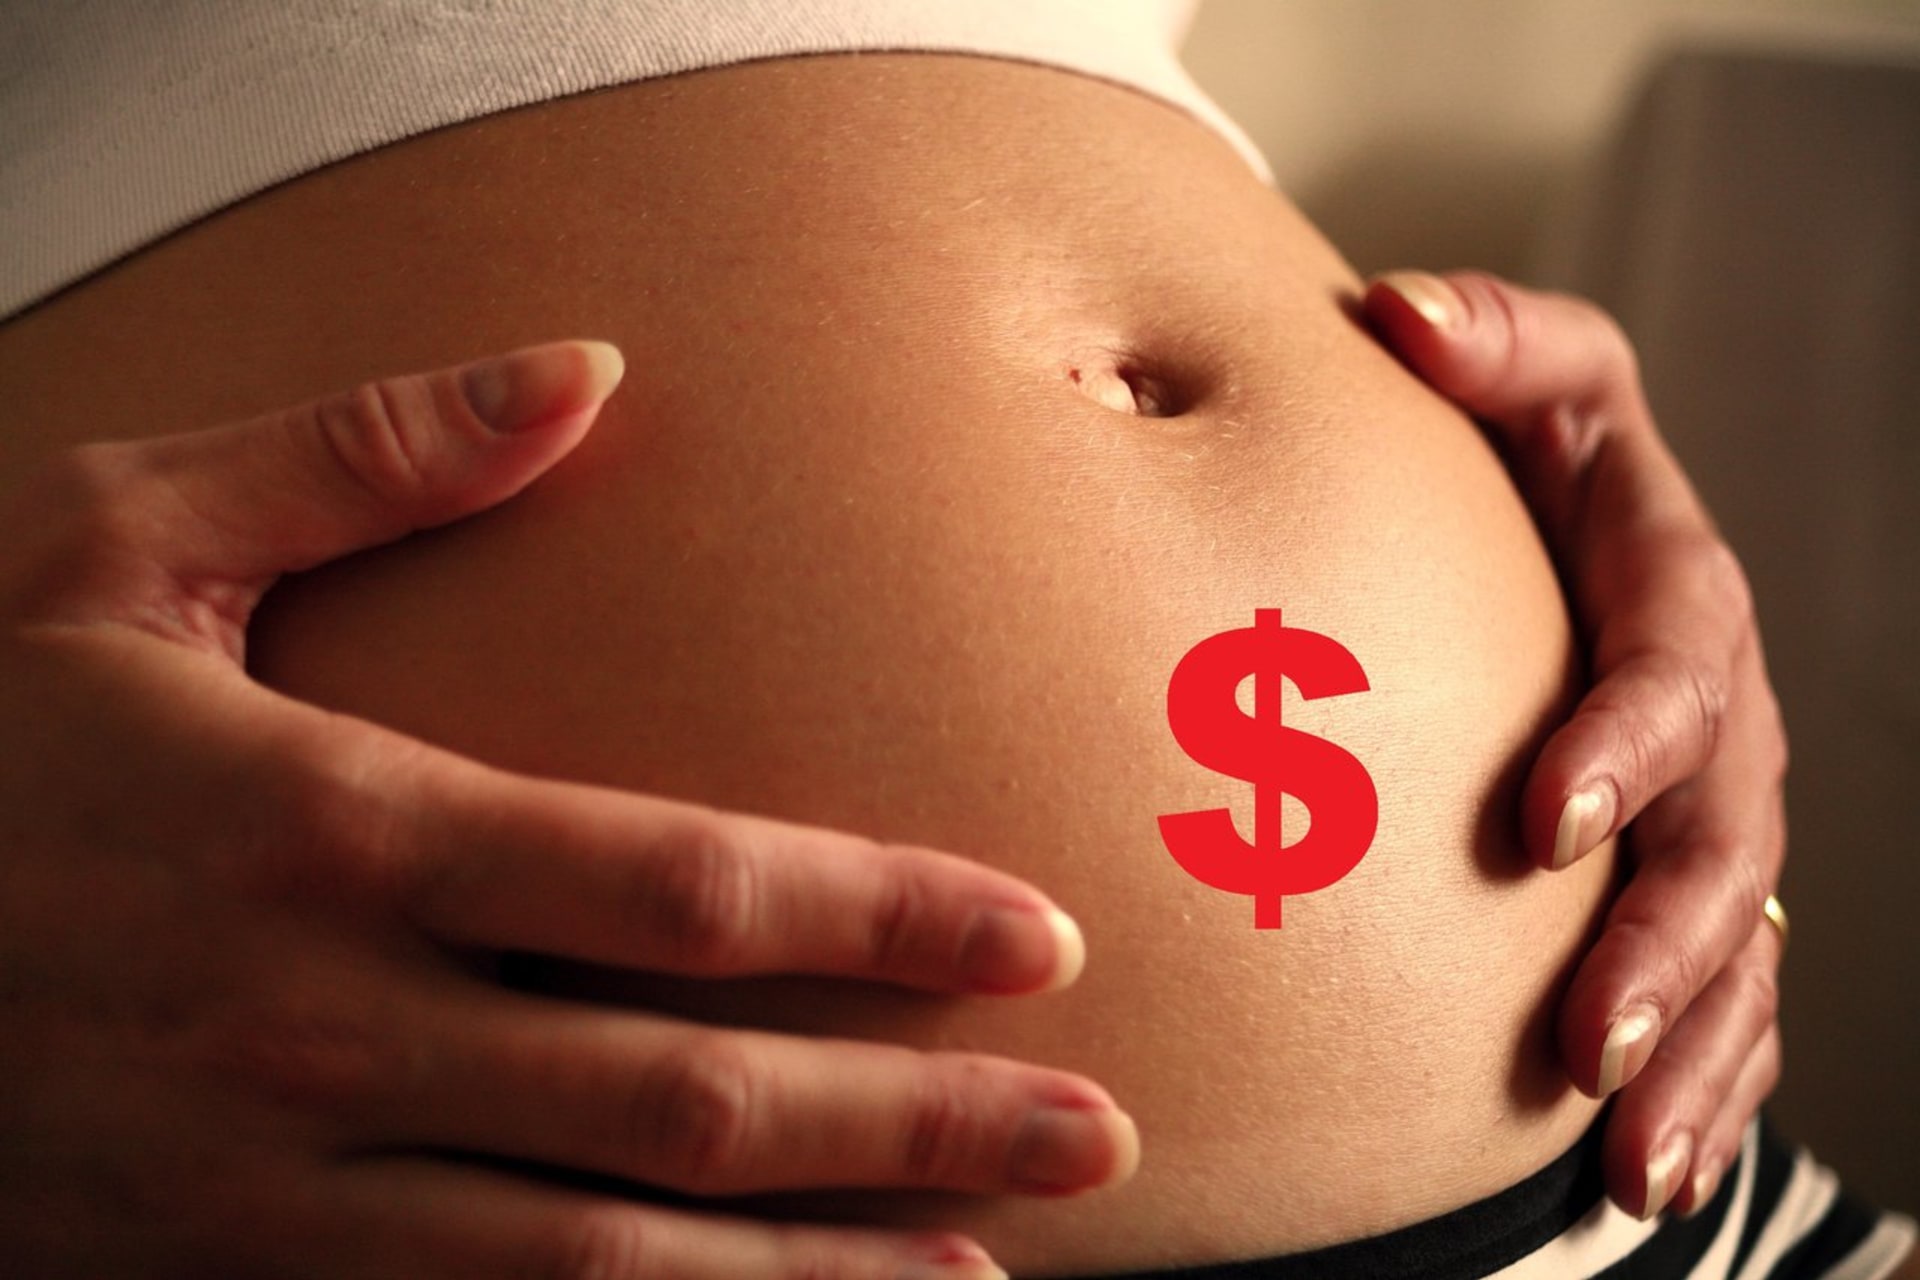 Těhotenství jako výdělek?